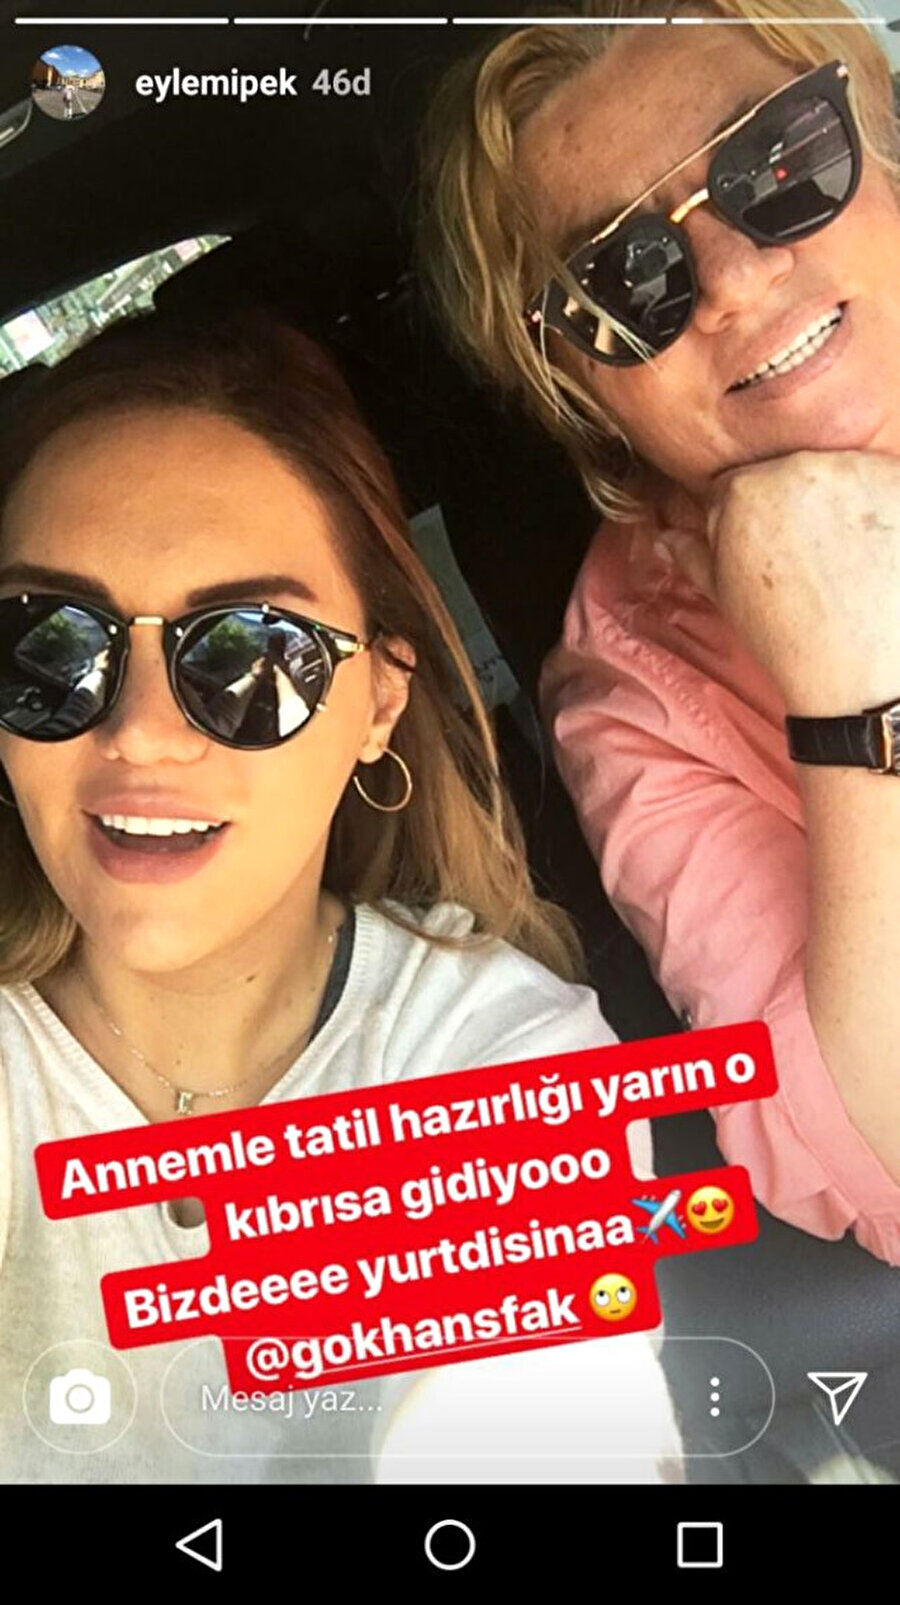 Sosyal medyadan duyurdular
Yaşar İpek'in annesi Fatoş İpek ve kız kardeşi Eylem Şafak İpek nişana katılmayacaklarını sosyal medyadan yaptıkları paylaşımla duyurdu. Eylem İpek Instagram'da annesiyle beraber çekindikleri fotoğrafa,"Annemle tatil hazırlığı yarın o Kıbrıs'a gidiyor. Bizde yurt dışına" yazarak törene katılmayacaklarını ilan etti.